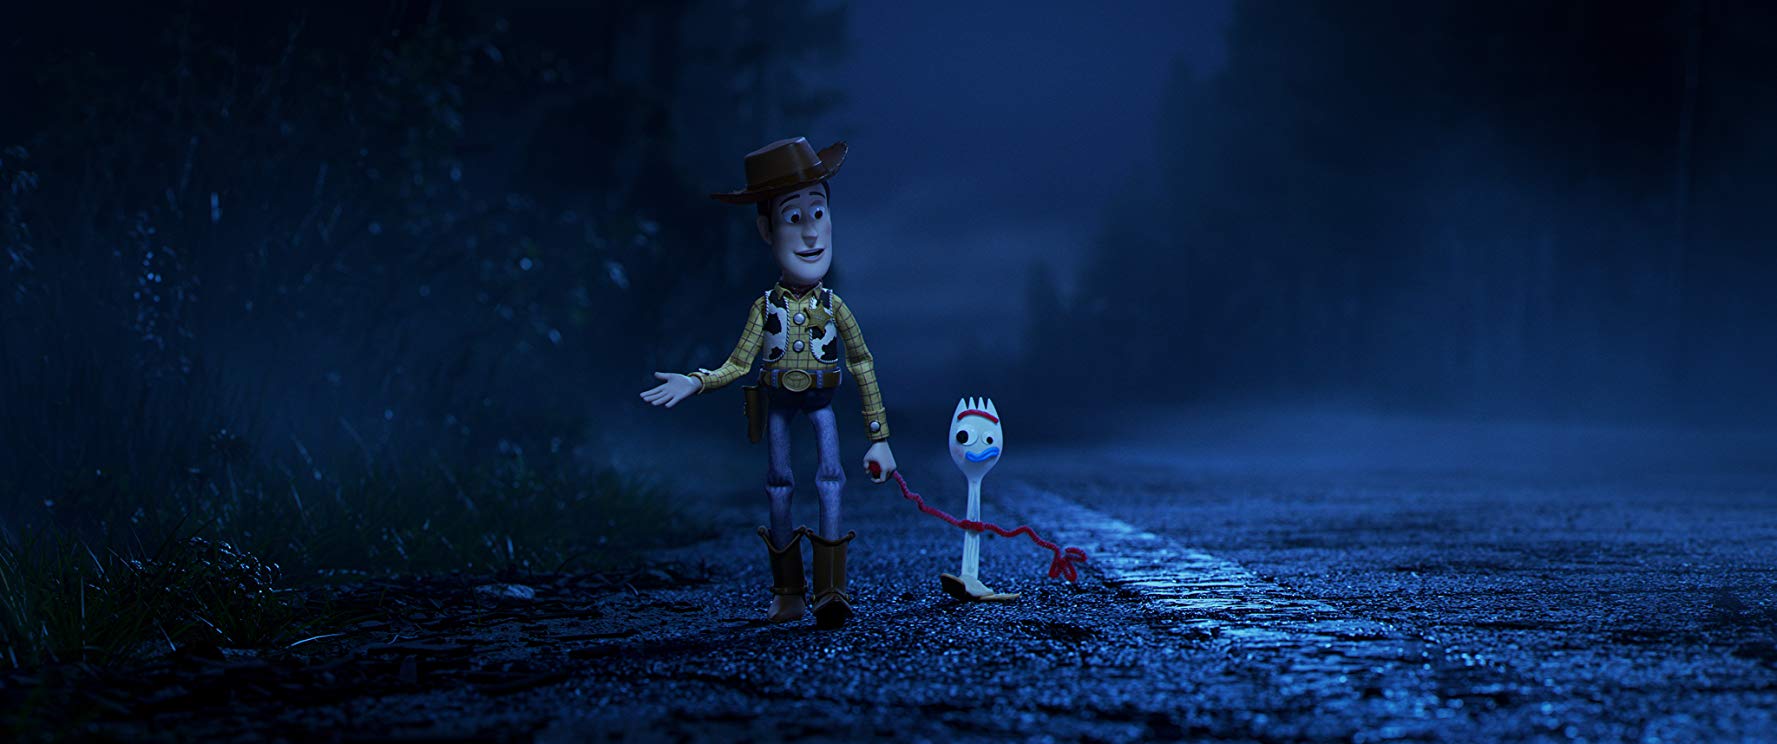 Filmowe ferie z hitami 2019 (bilety 12 zł): Toy Story 4